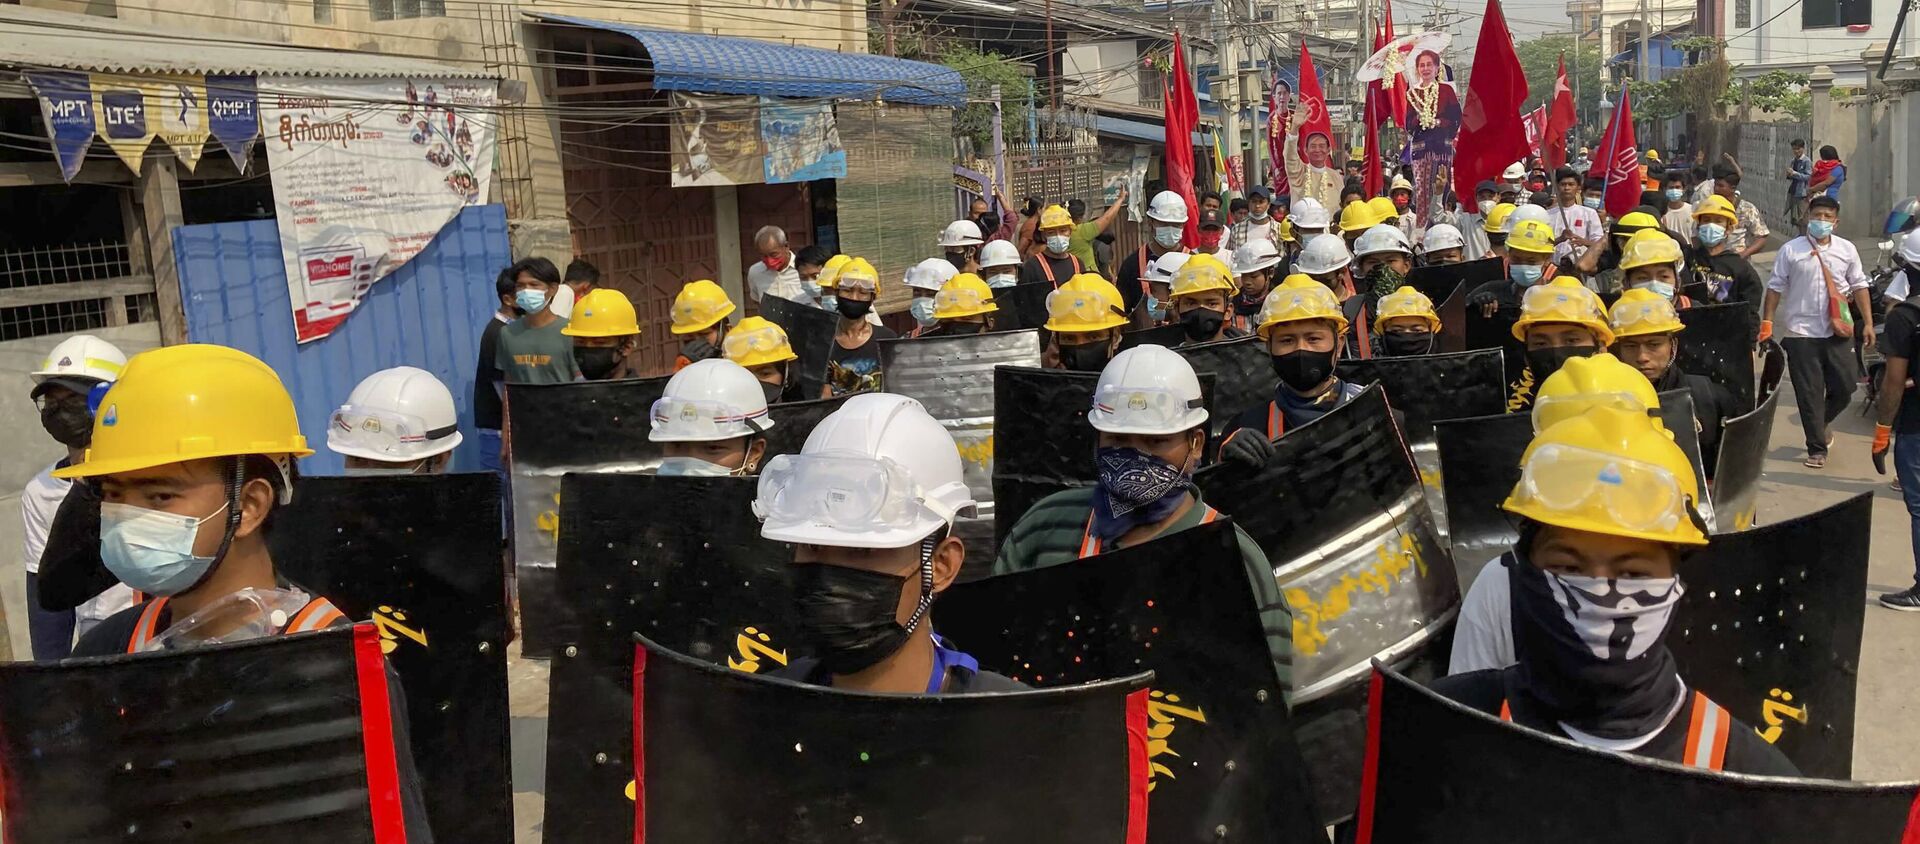 Người biểu tình tuần hành với những tấm chắn tạm bợ trên một con đường chính trong cuộc biểu tình ở Mandalay, Myanmar, Thứ Hai, ngày 8 tháng 3 năm 2021. Các cuộc biểu tình lớn đã xảy ra hàng ngày trên nhiều thành phố và thị trấn ở Myanmar. - Sputnik Việt Nam, 1920, 12.03.2021